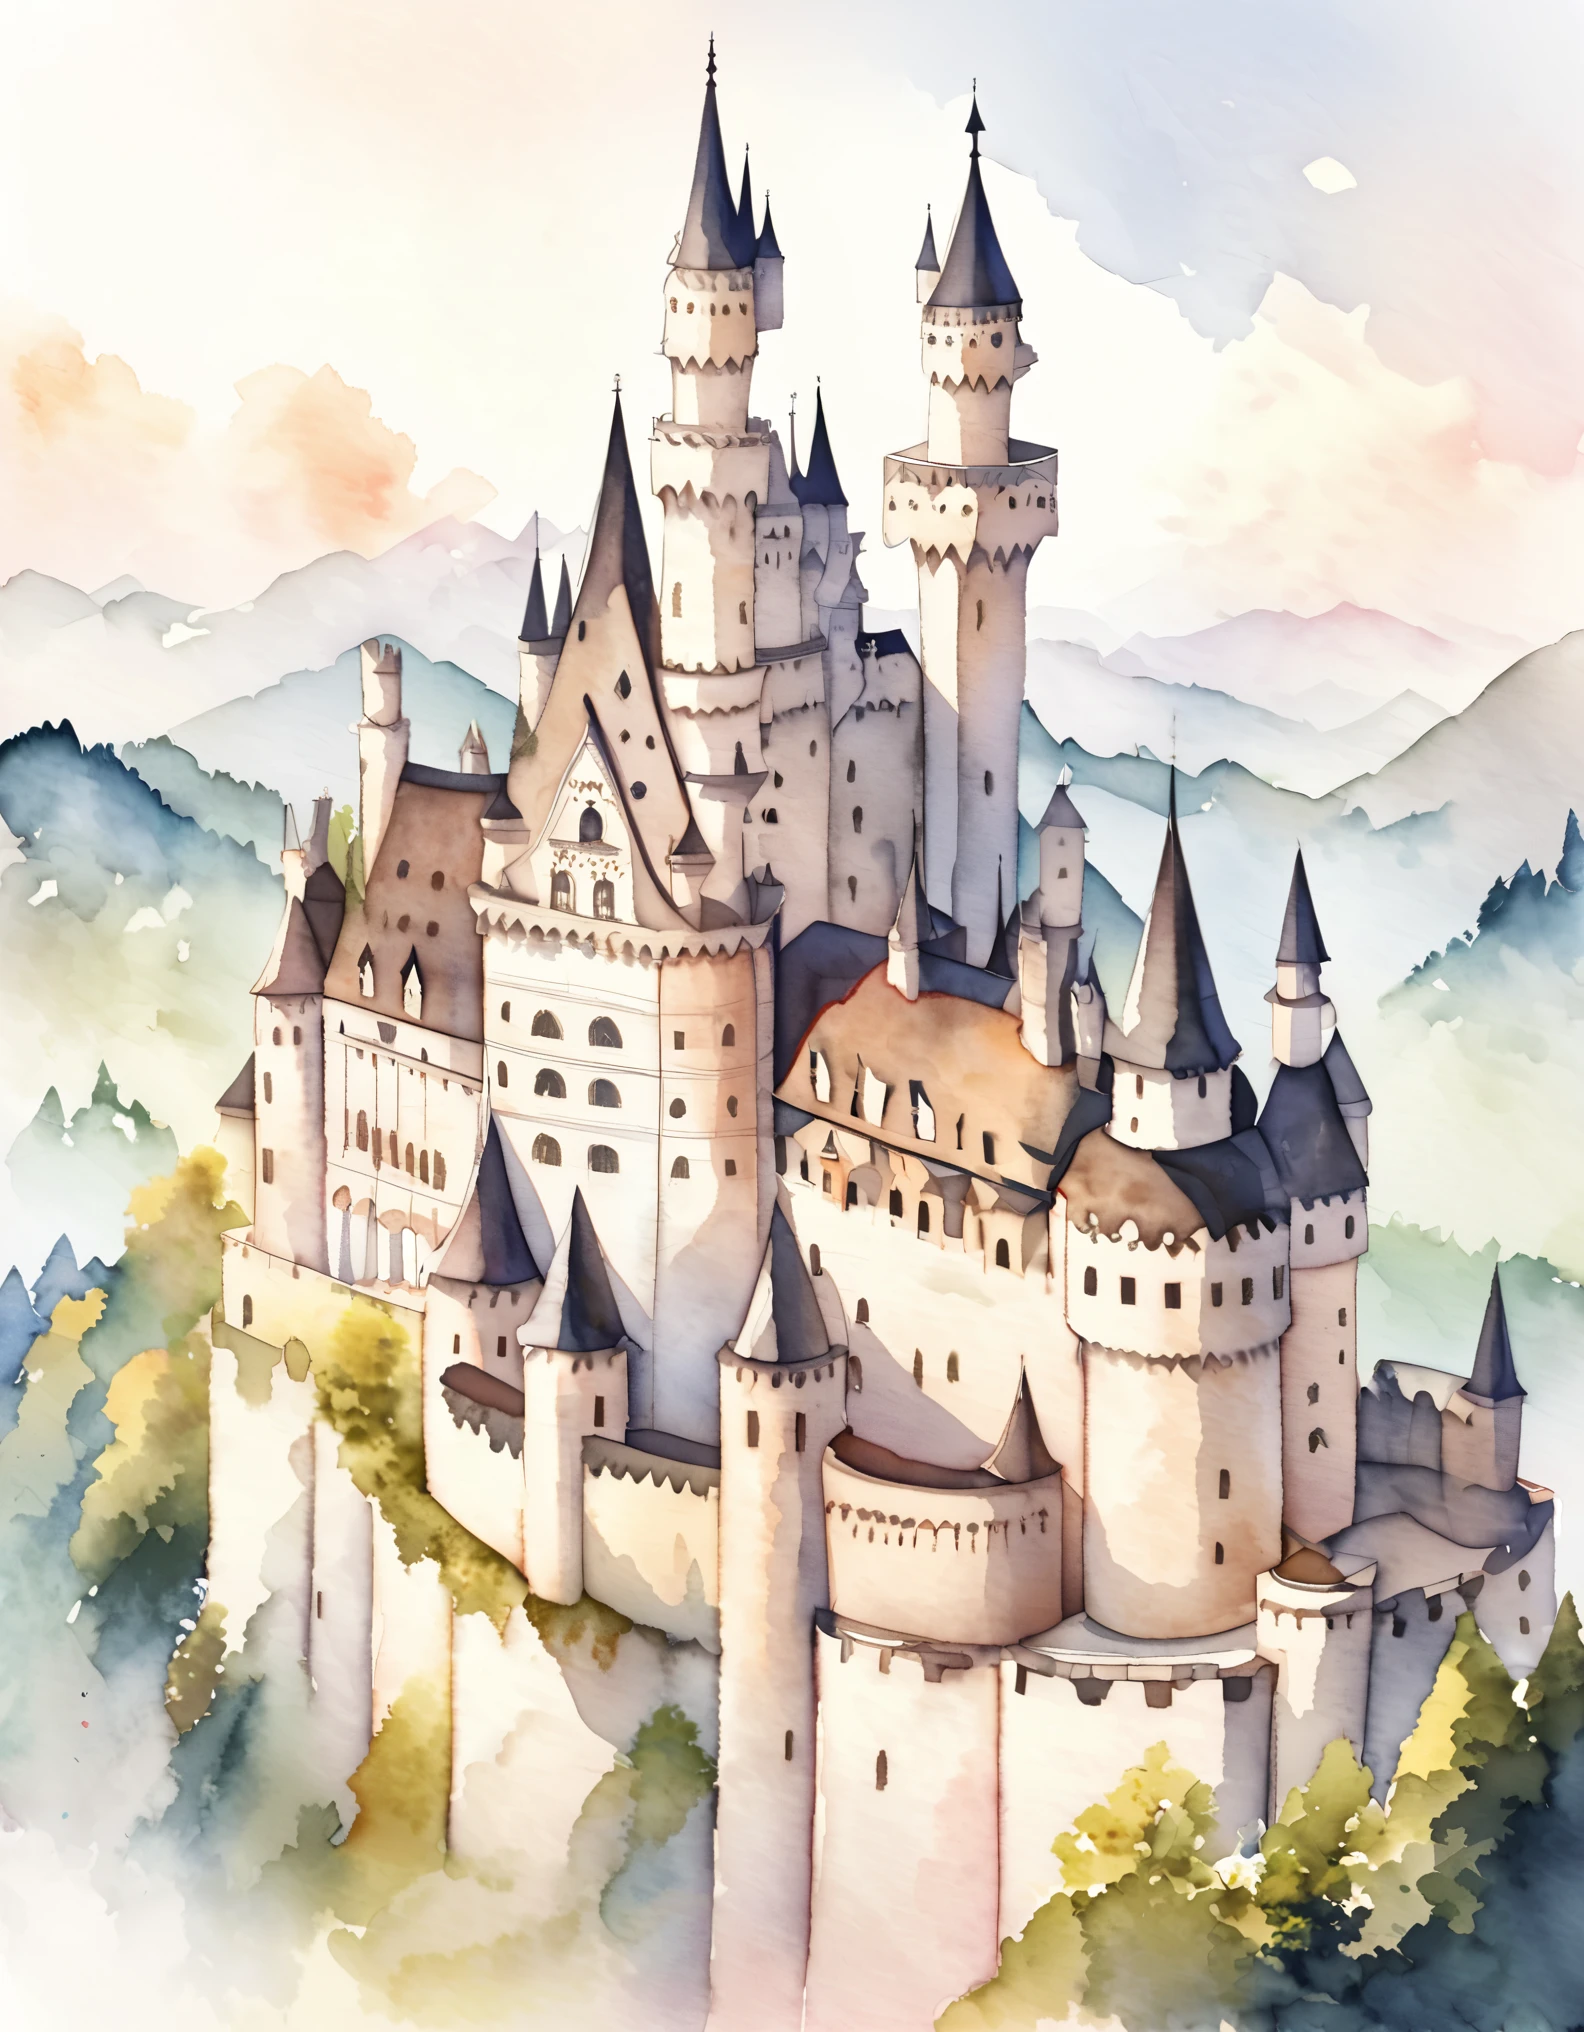 Castillo de Neuschwanstein, Las paredes exteriores son de ladrillo revestido de piedra caliza blanca.., Un castillo romántico para un rey que persigue un sueño incumplido, hermoso castillo, Castillos en Alemania, Construido sobre una colina, acuarela:1.2, caprichoso y delicado, Como una ilustración en un niño.&#39;libro, Pincelada suave, oscuro, Los colores pálidos crean una apariencia fantástica..